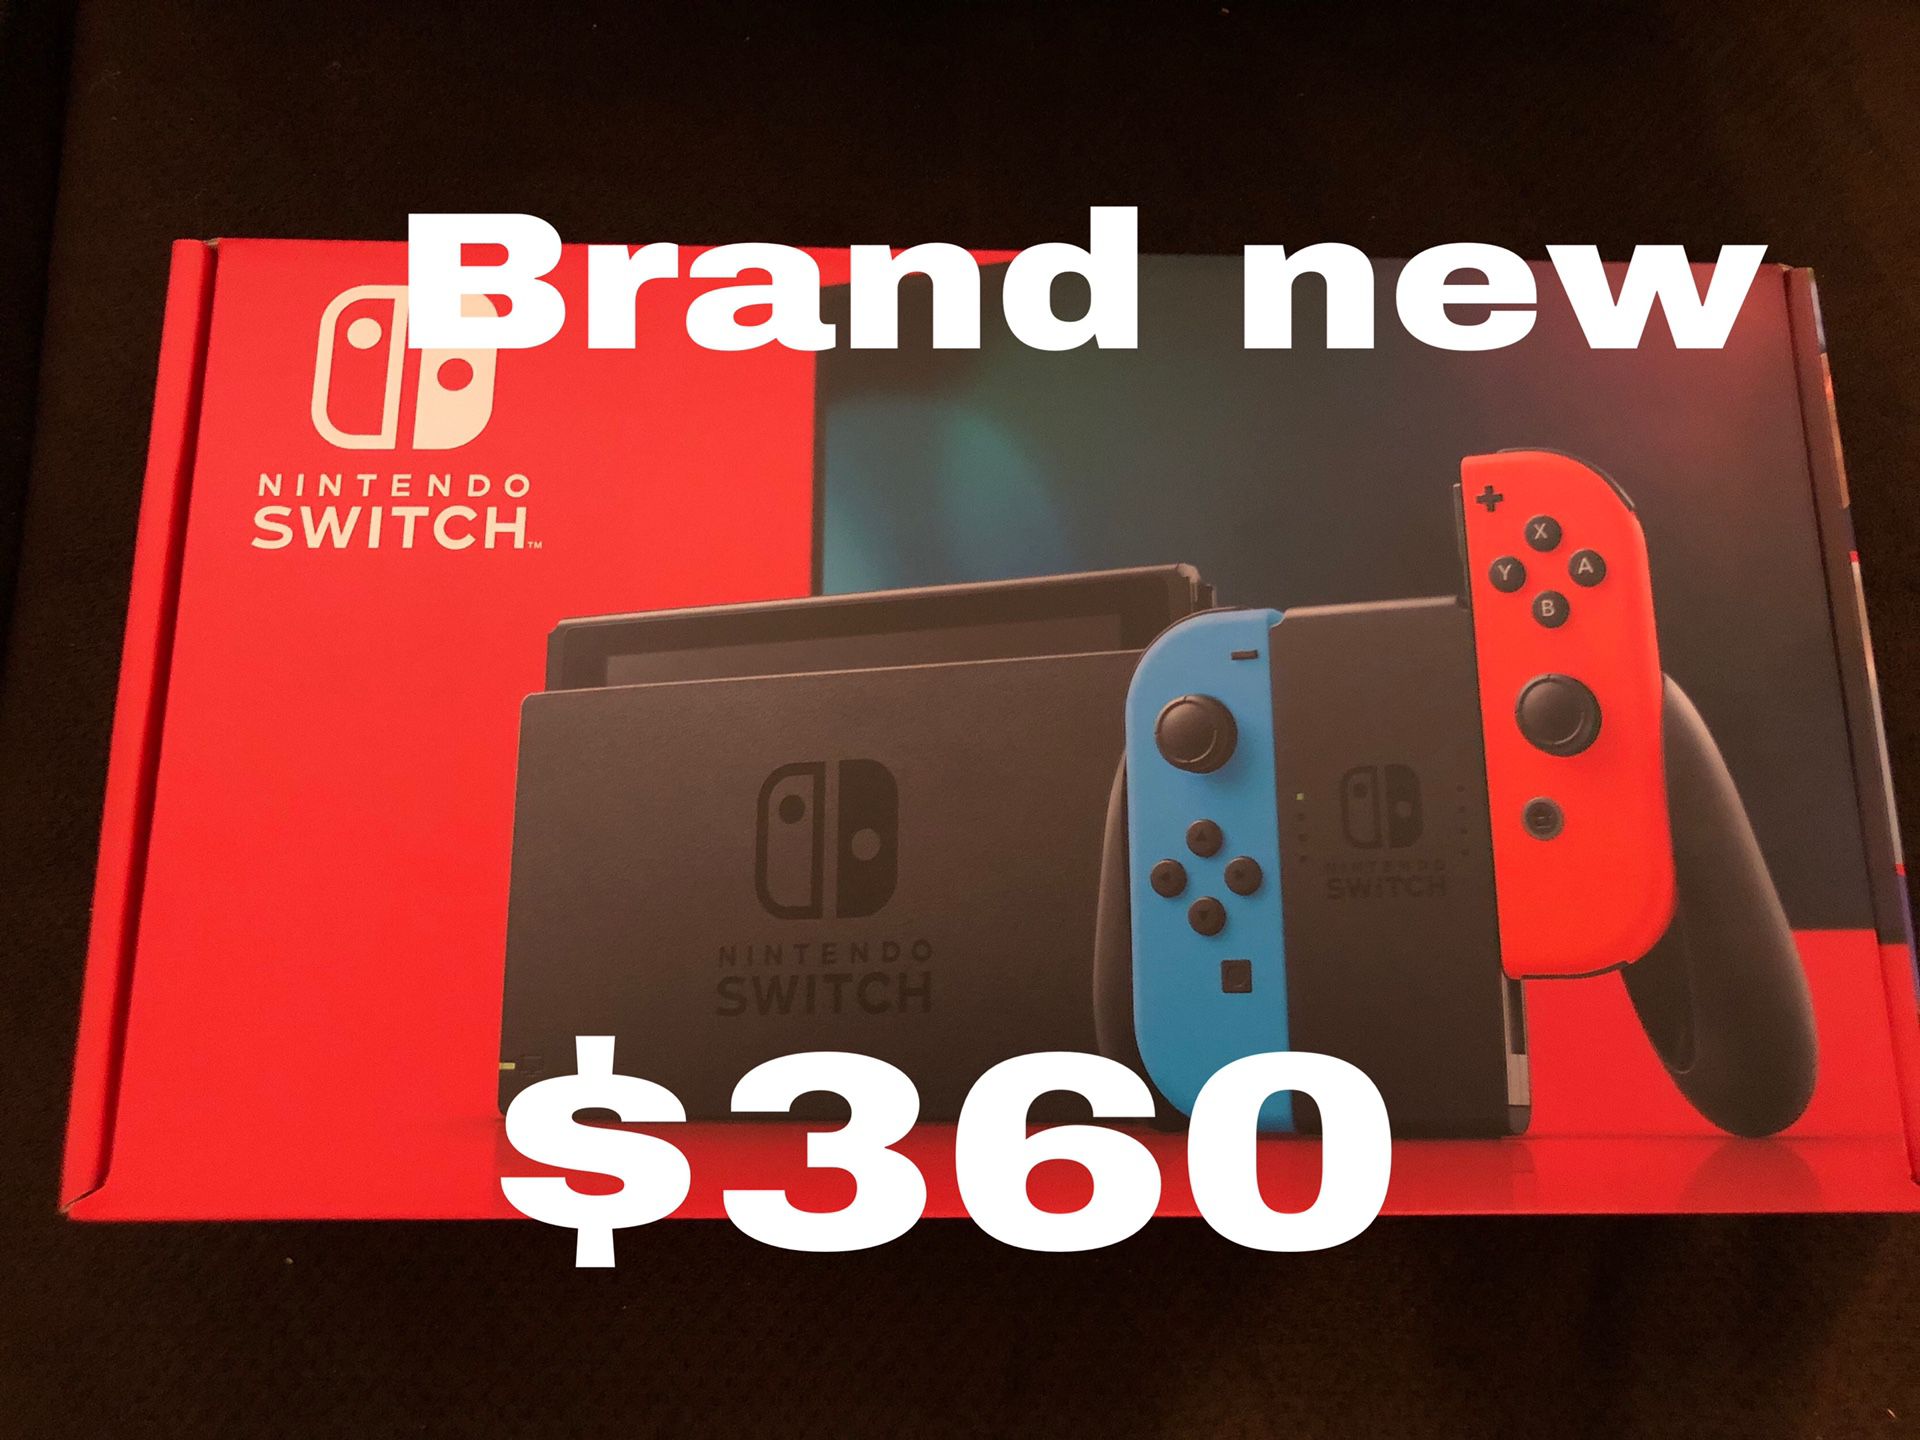 Nintendo Switch brand new V2